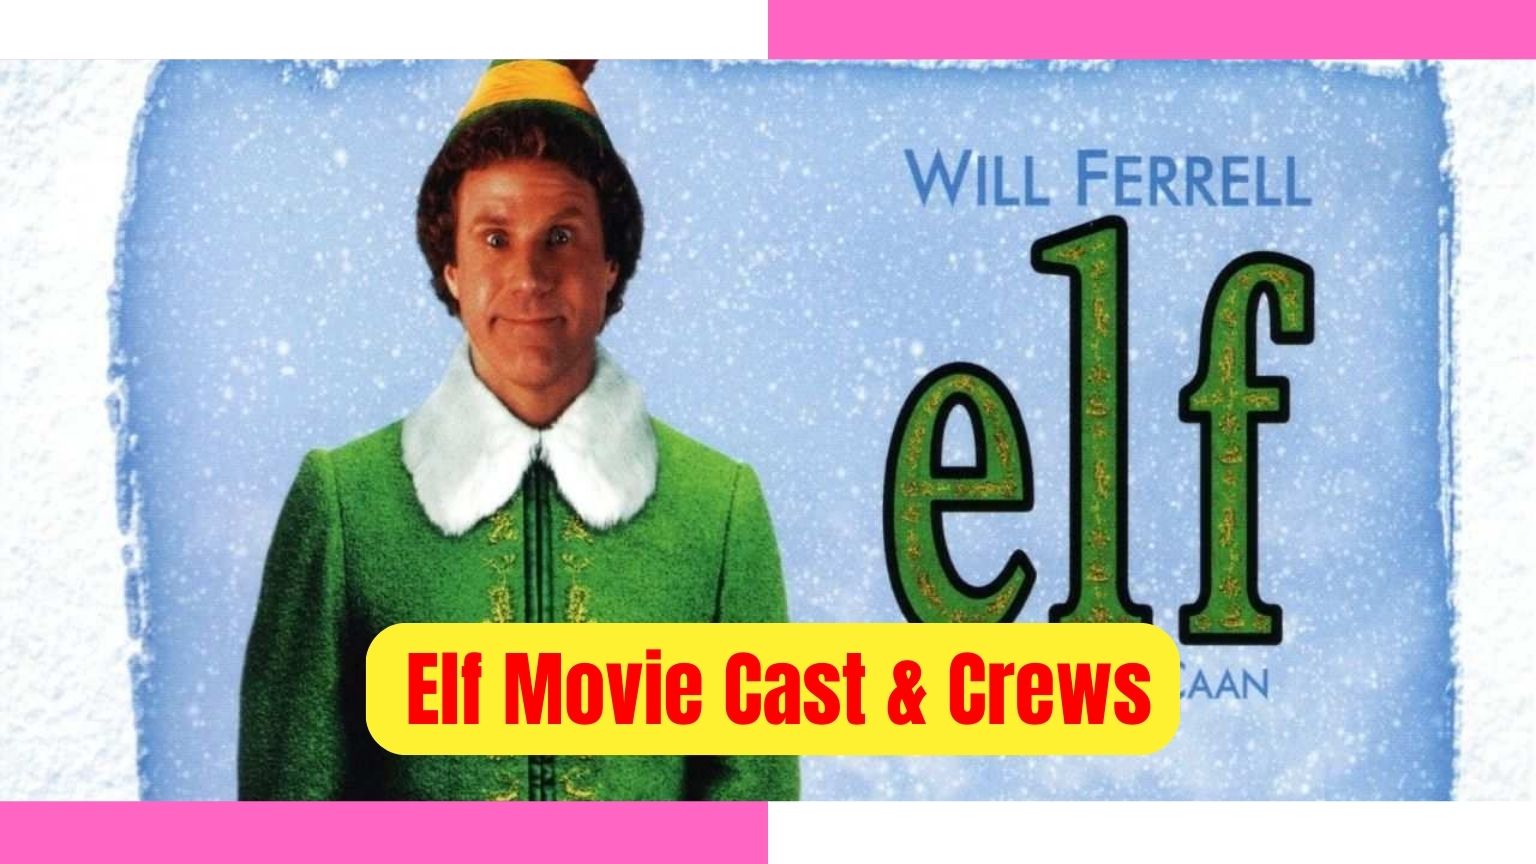 Elf Cast & Crews, watch elf (film), elf movie, elf movie cast, elf movie streaming, stream elf movie, elf movie characters,